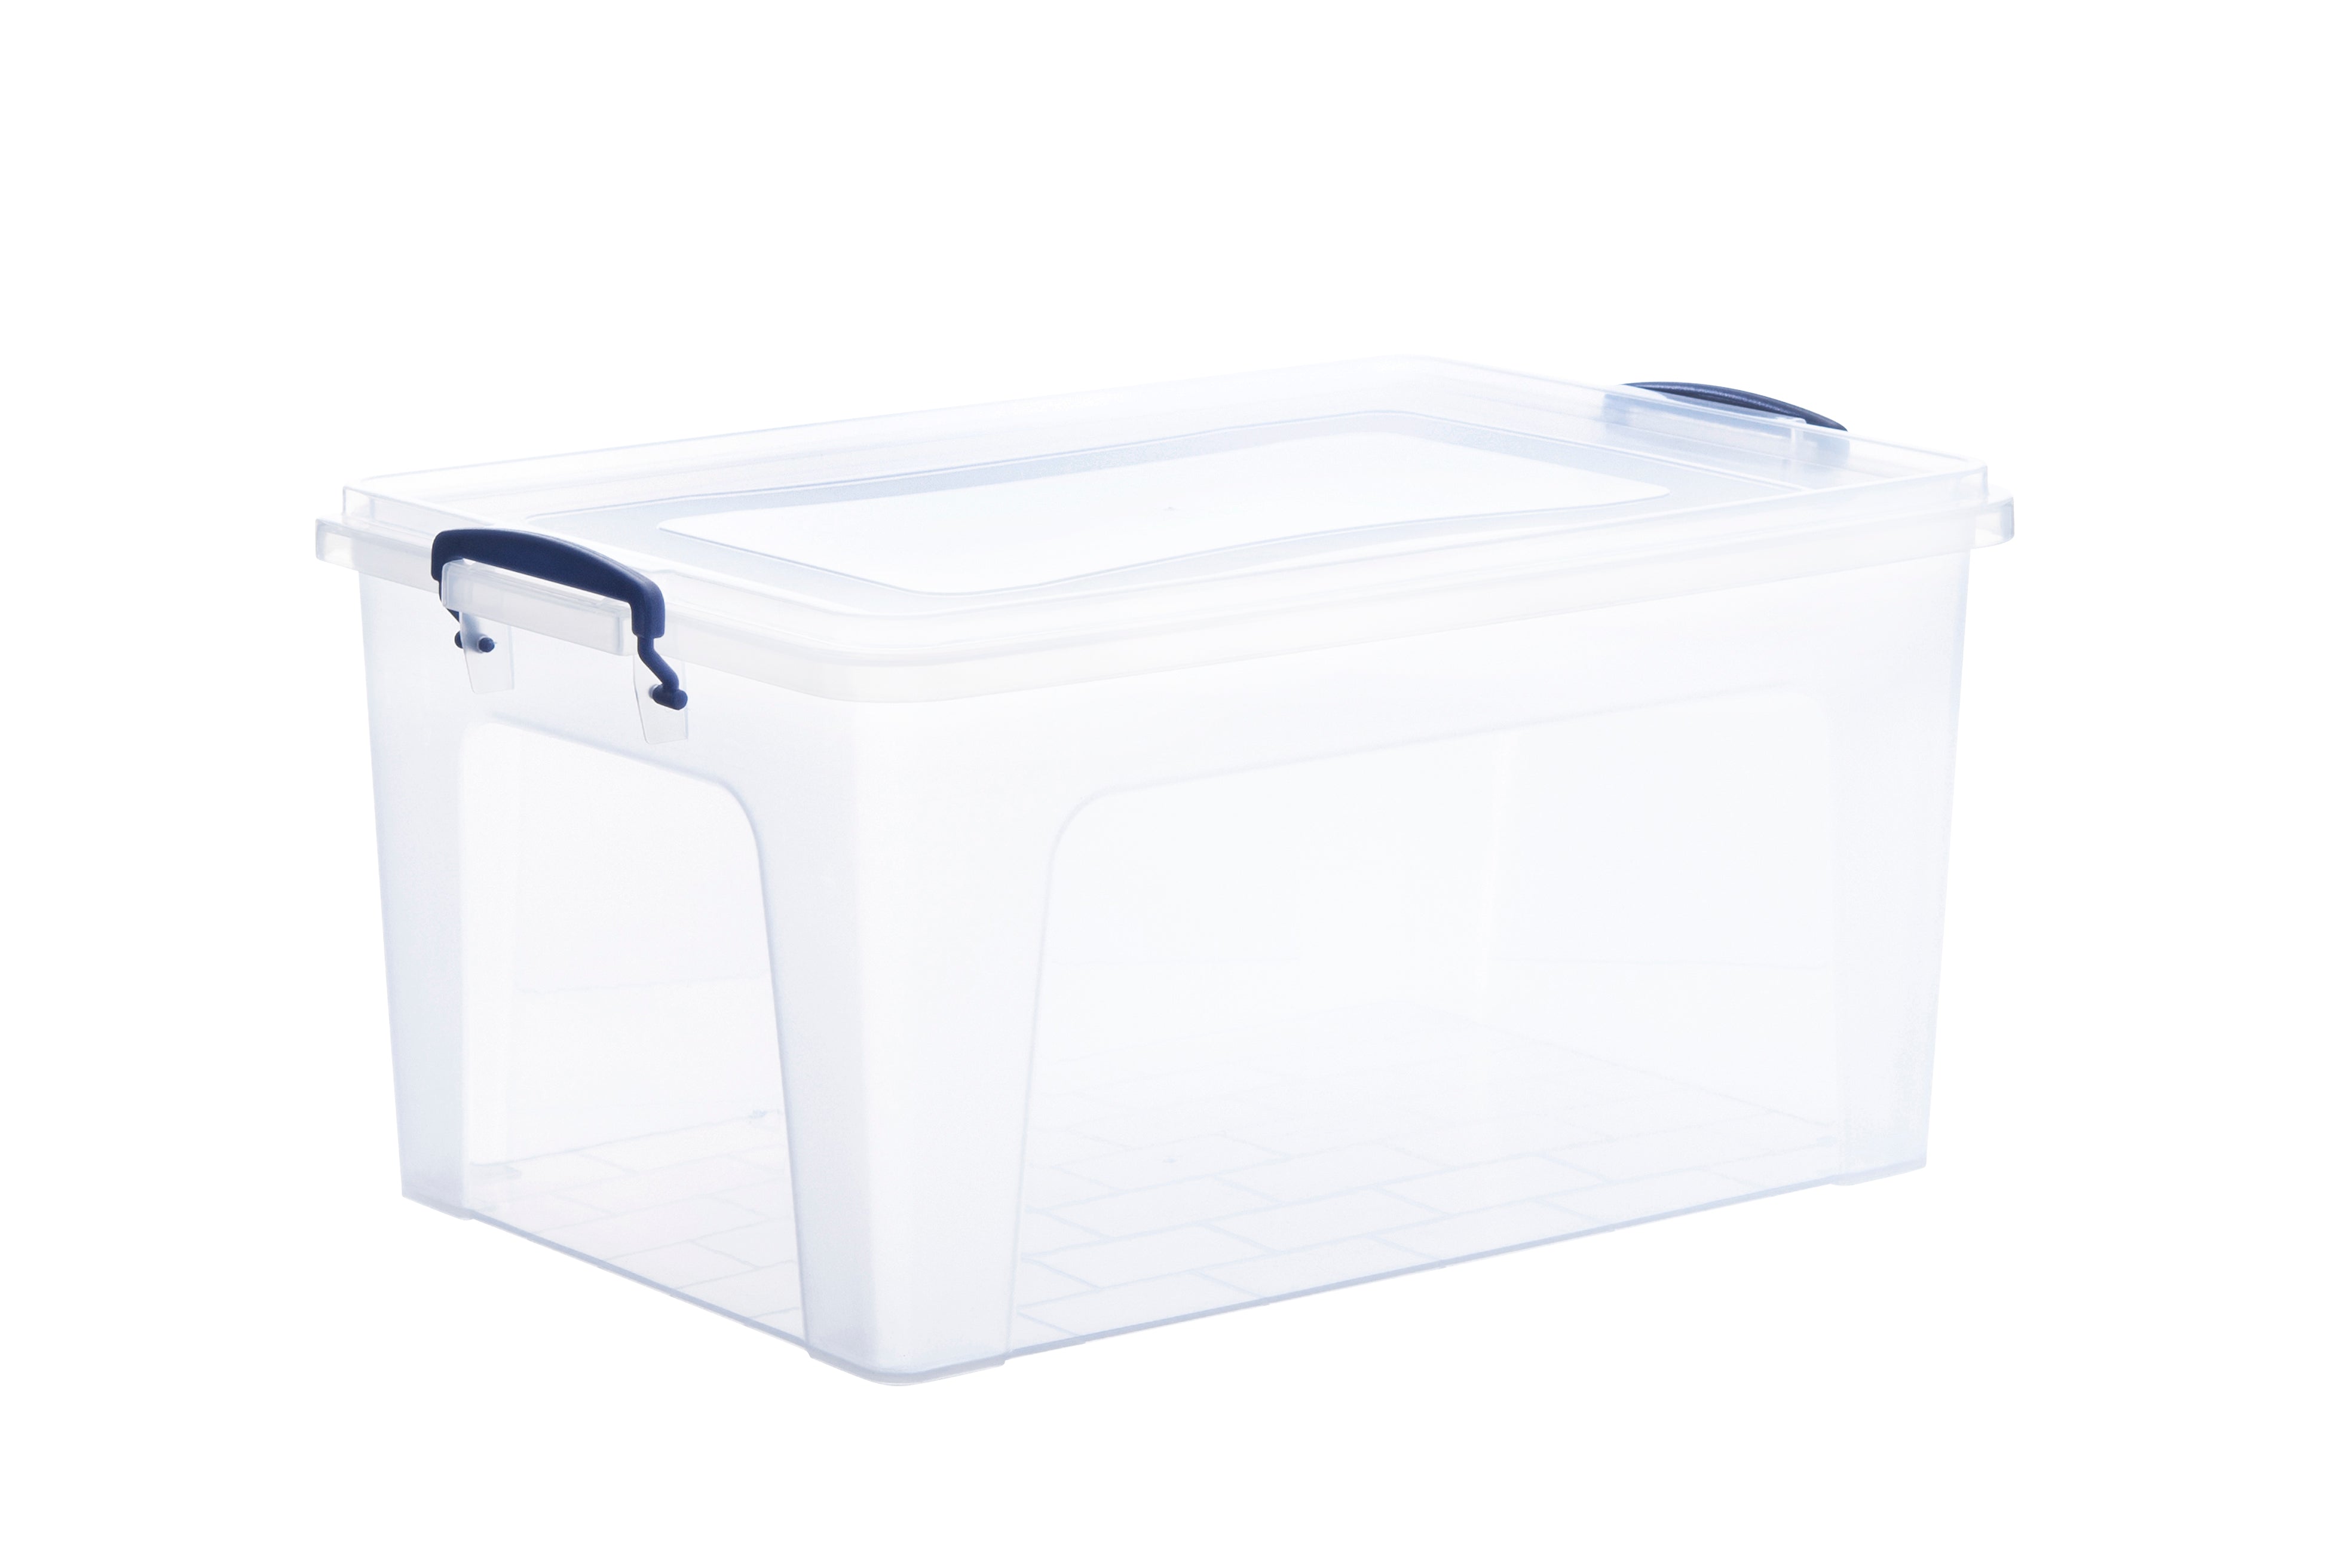 Storage Container (1.25 Quart) – Superio